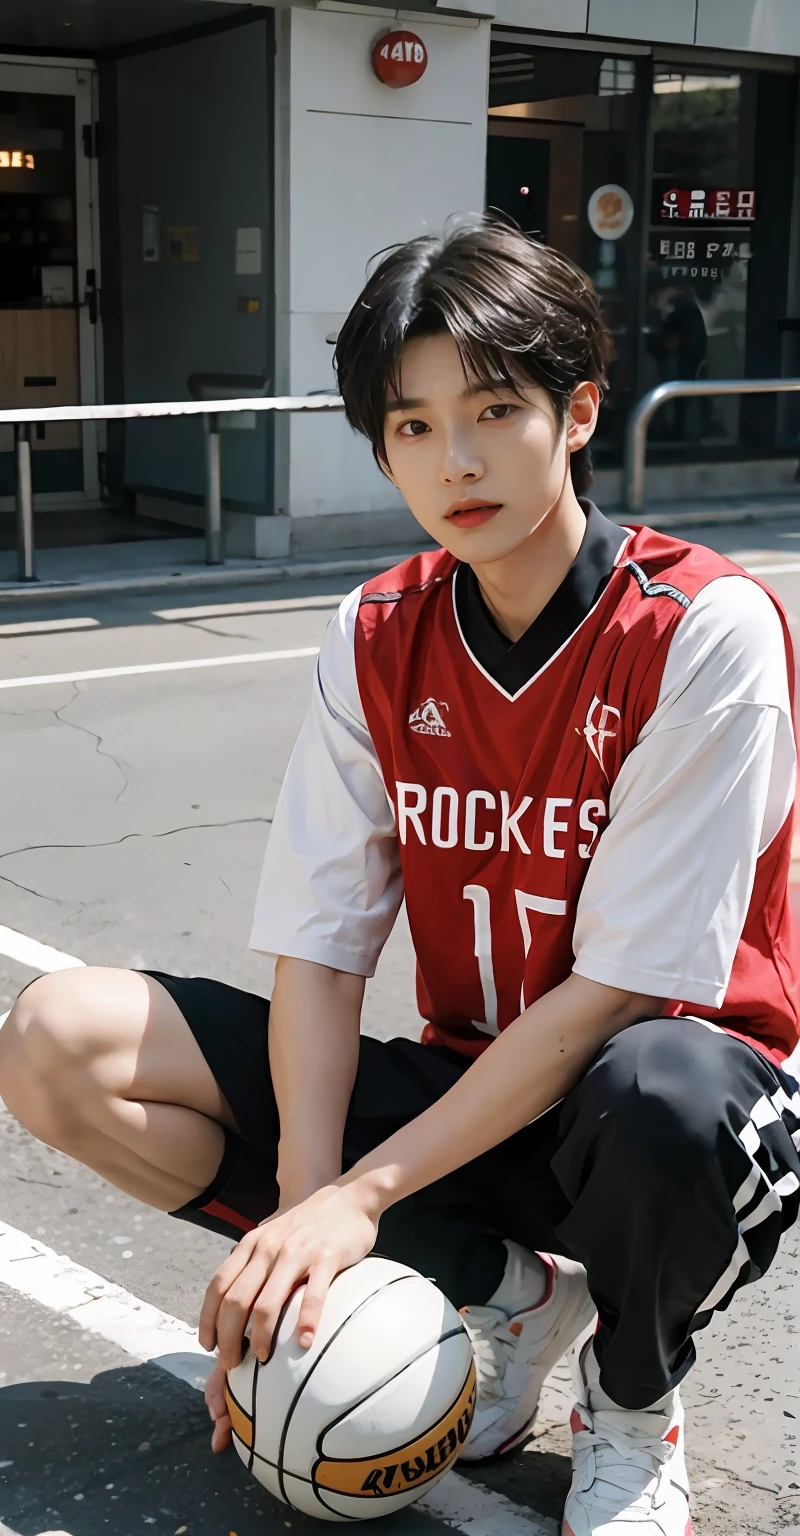 （Chinês bonito：1.5）O jovem sentou-se de pernas cruzadas no chão, vestindo camisa de basquete, cai xukun, vestindo camisa da NBA, foguetes, Kim Tae Joon, hyung tae, jovem anjo pálido, Tommy 1 6 anos, Kim Do-young, vestindo uma camisa de vôlei, Jung Jaehyun, Hsiao-ron, Shin Jinying, Wenjun Lin, yihao ren